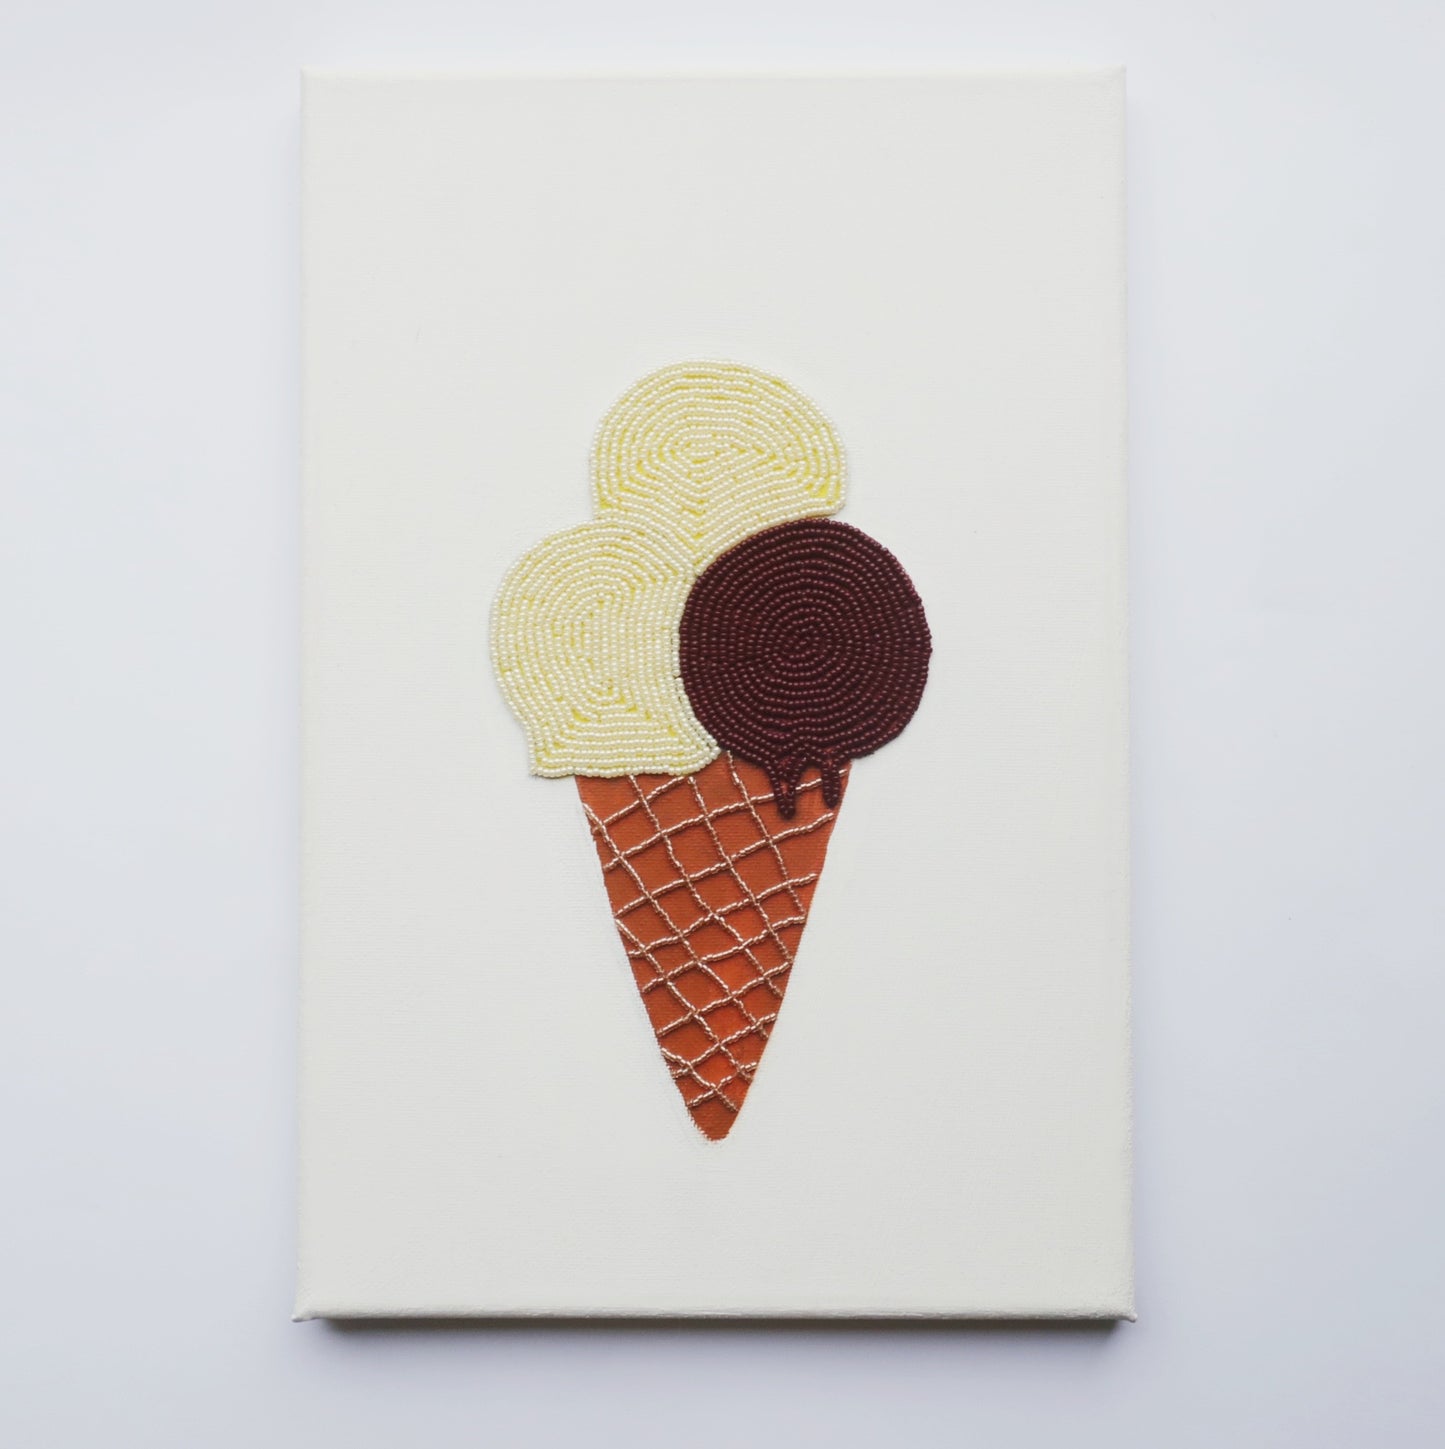 Vanilla and Chocolate ice cream